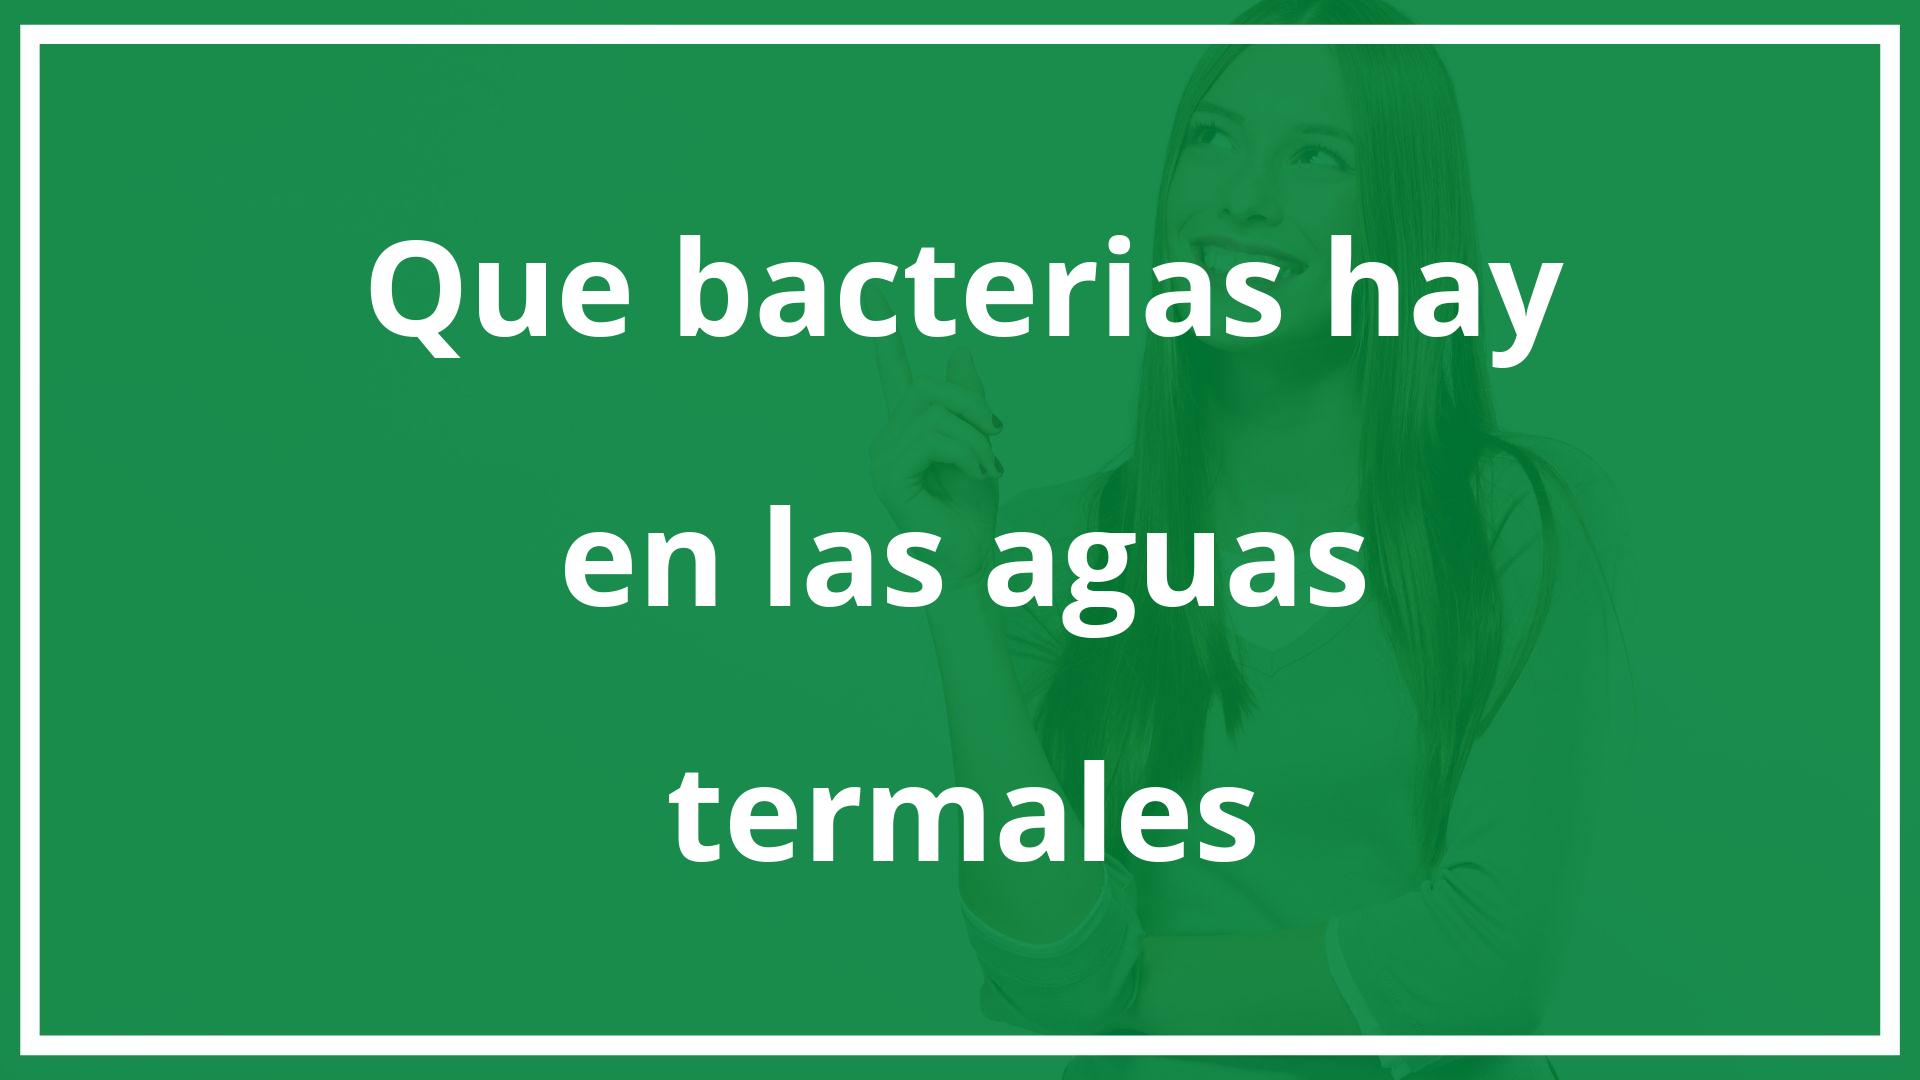 ¿Qué bacterias hay en las aguas termales?